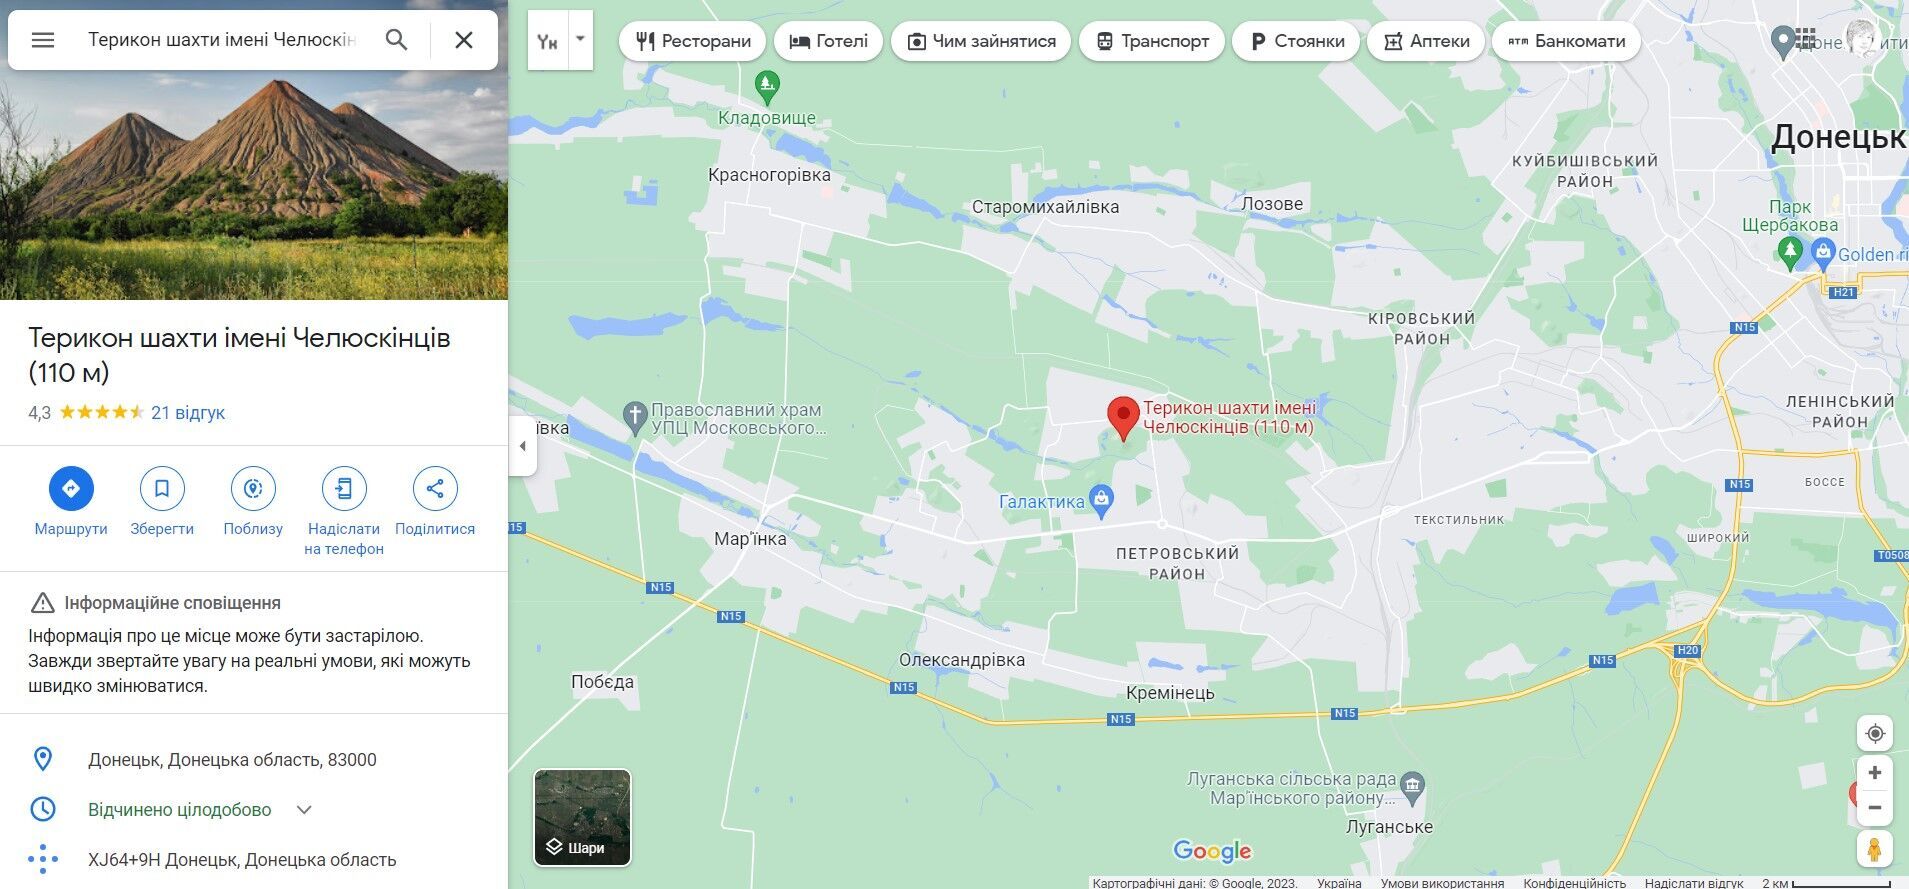 Місцевість на околиці Донецька, де, ймовірно, вибухнув склад БК армії рф